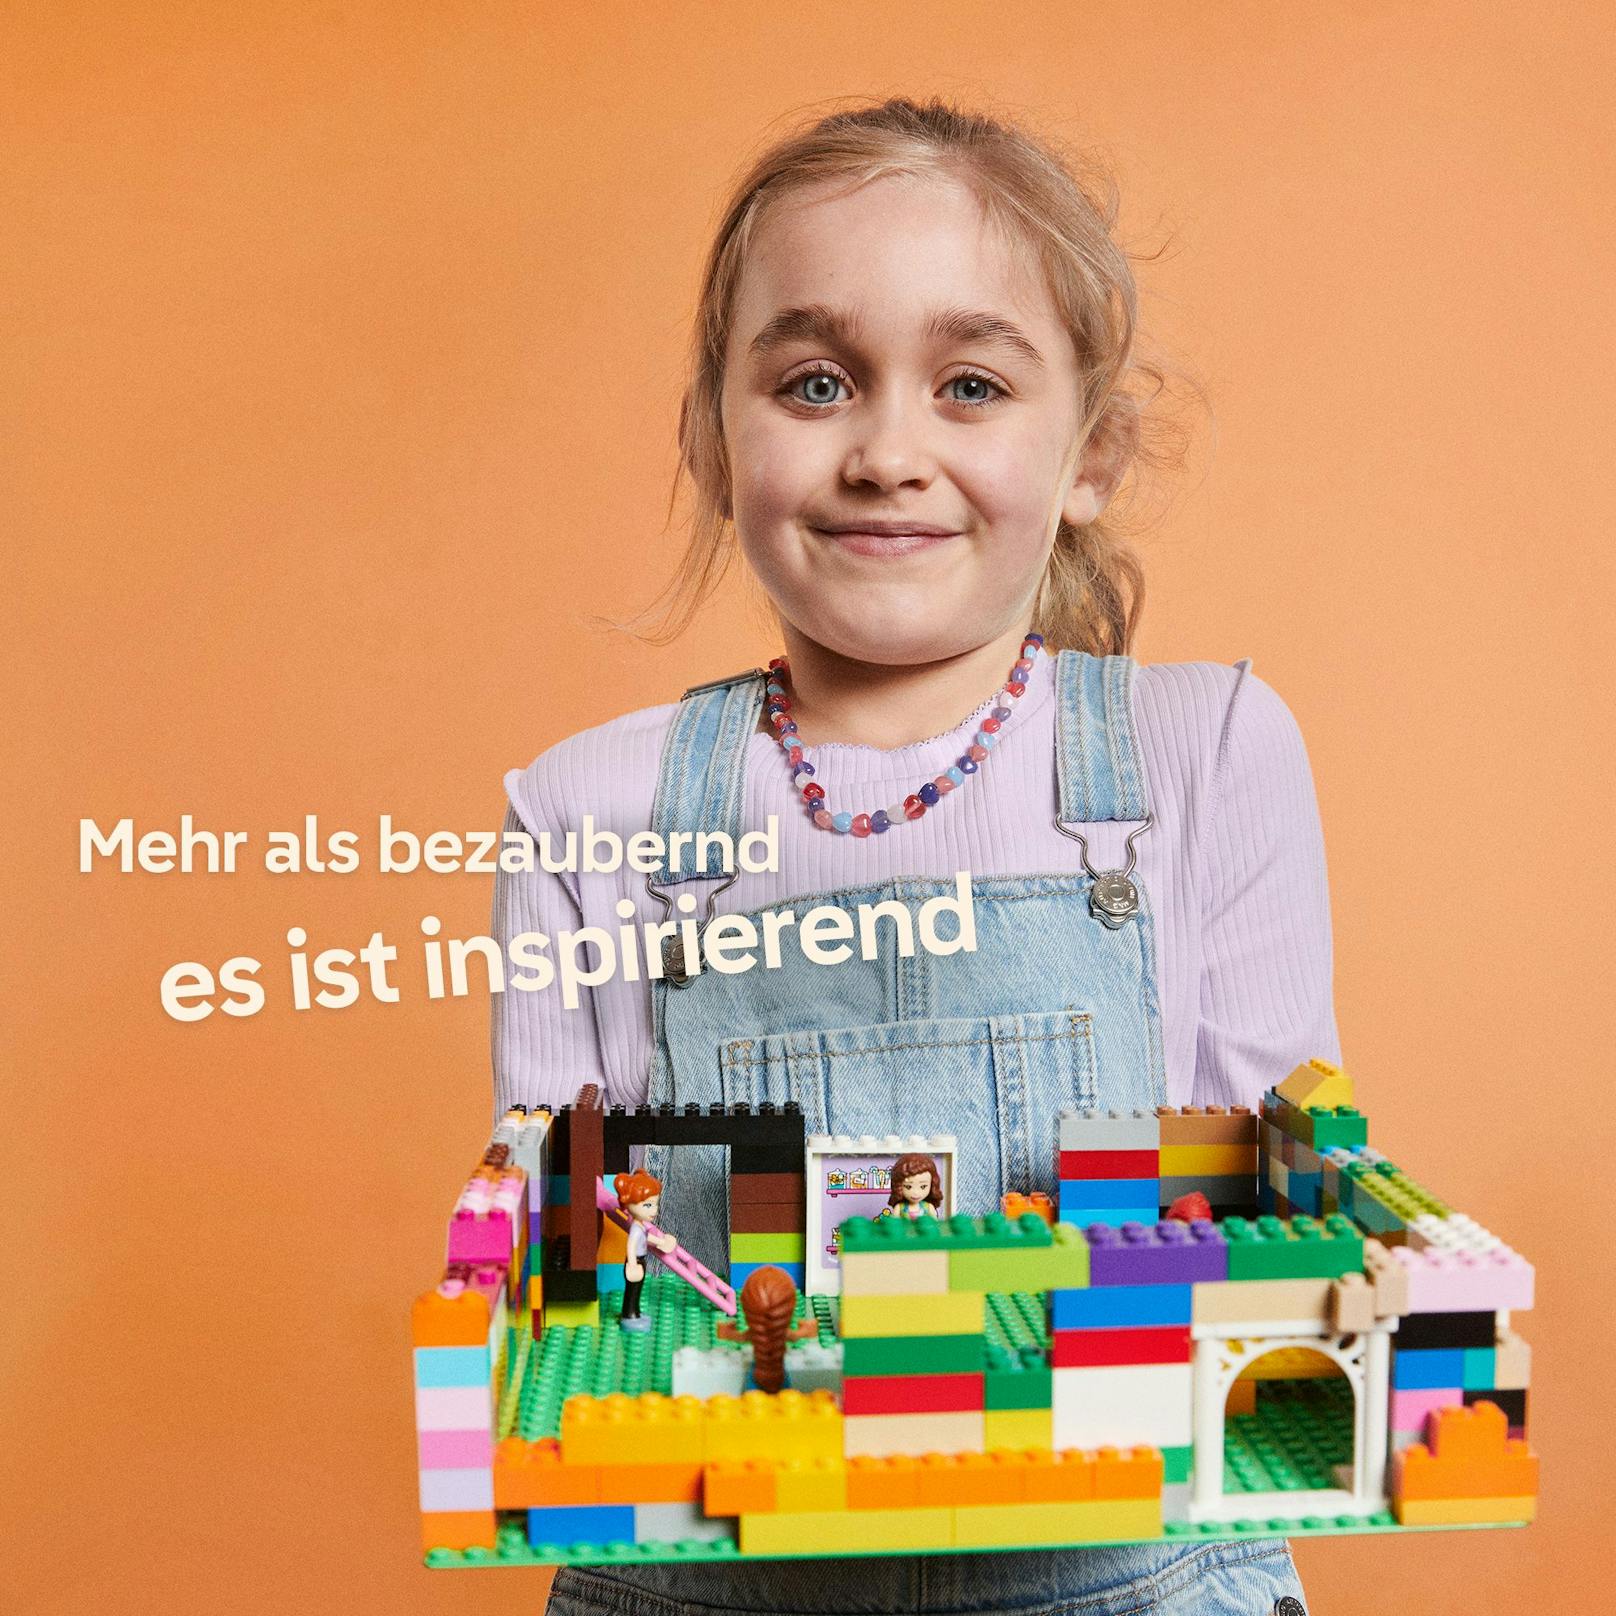 Das Problem ist nicht nur auf Österreich beschränkt, <a rel="nofollow" href="https://www.heute.at/t/lego-100056747">LEGO hat</a> im Rahmen der Studie 61.532 Eltern, Erwachsene und Kinder in 36 Ländern befragt.&nbsp;